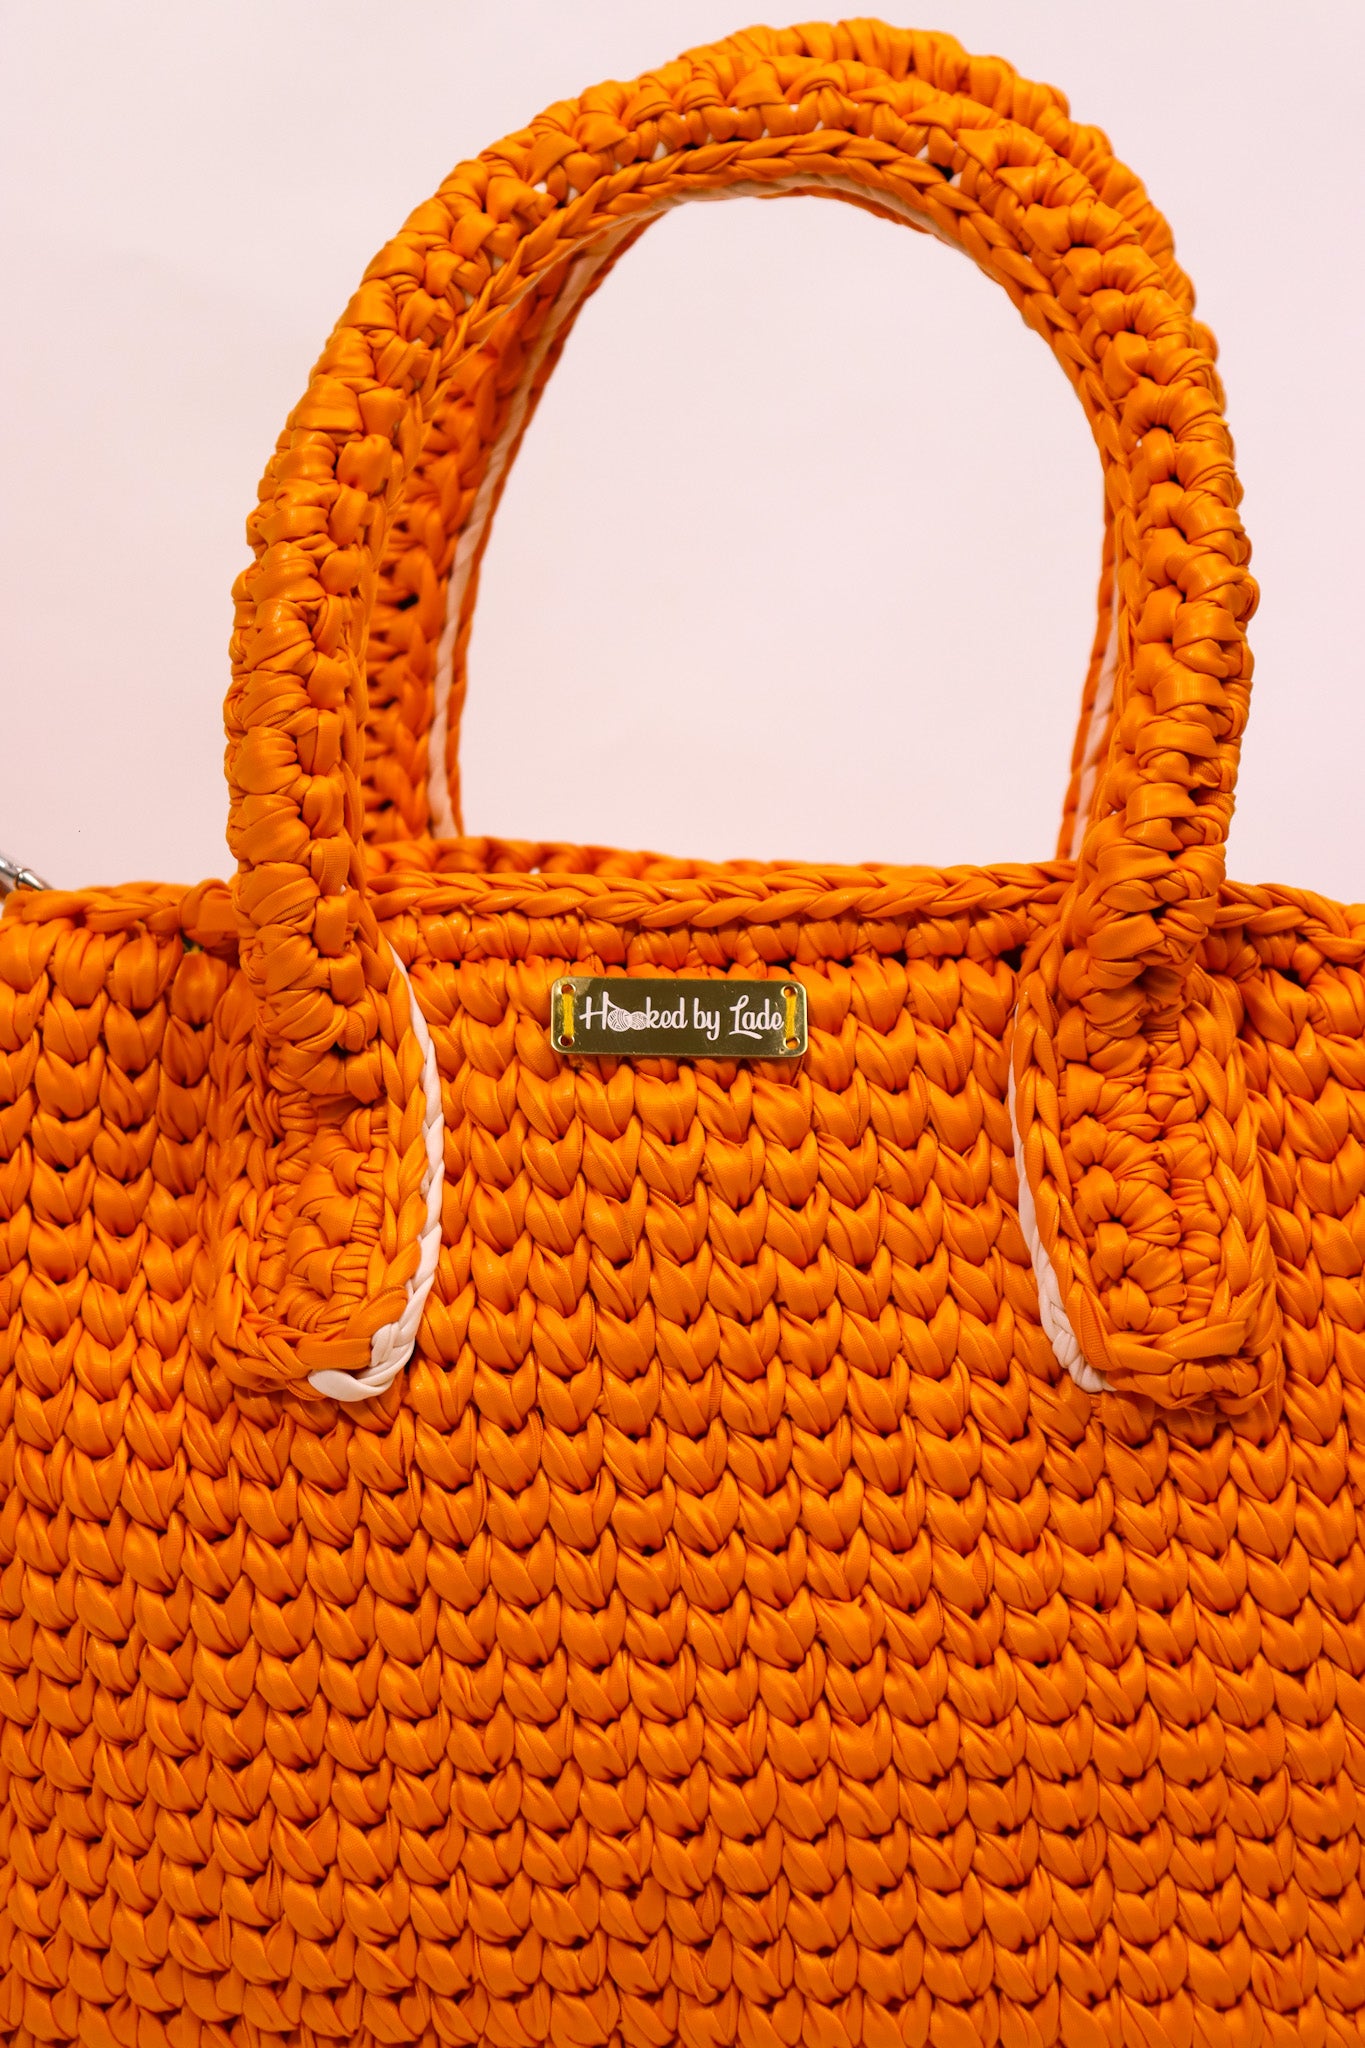 ‘Posi’ Tote handbag in Bright Orange leather